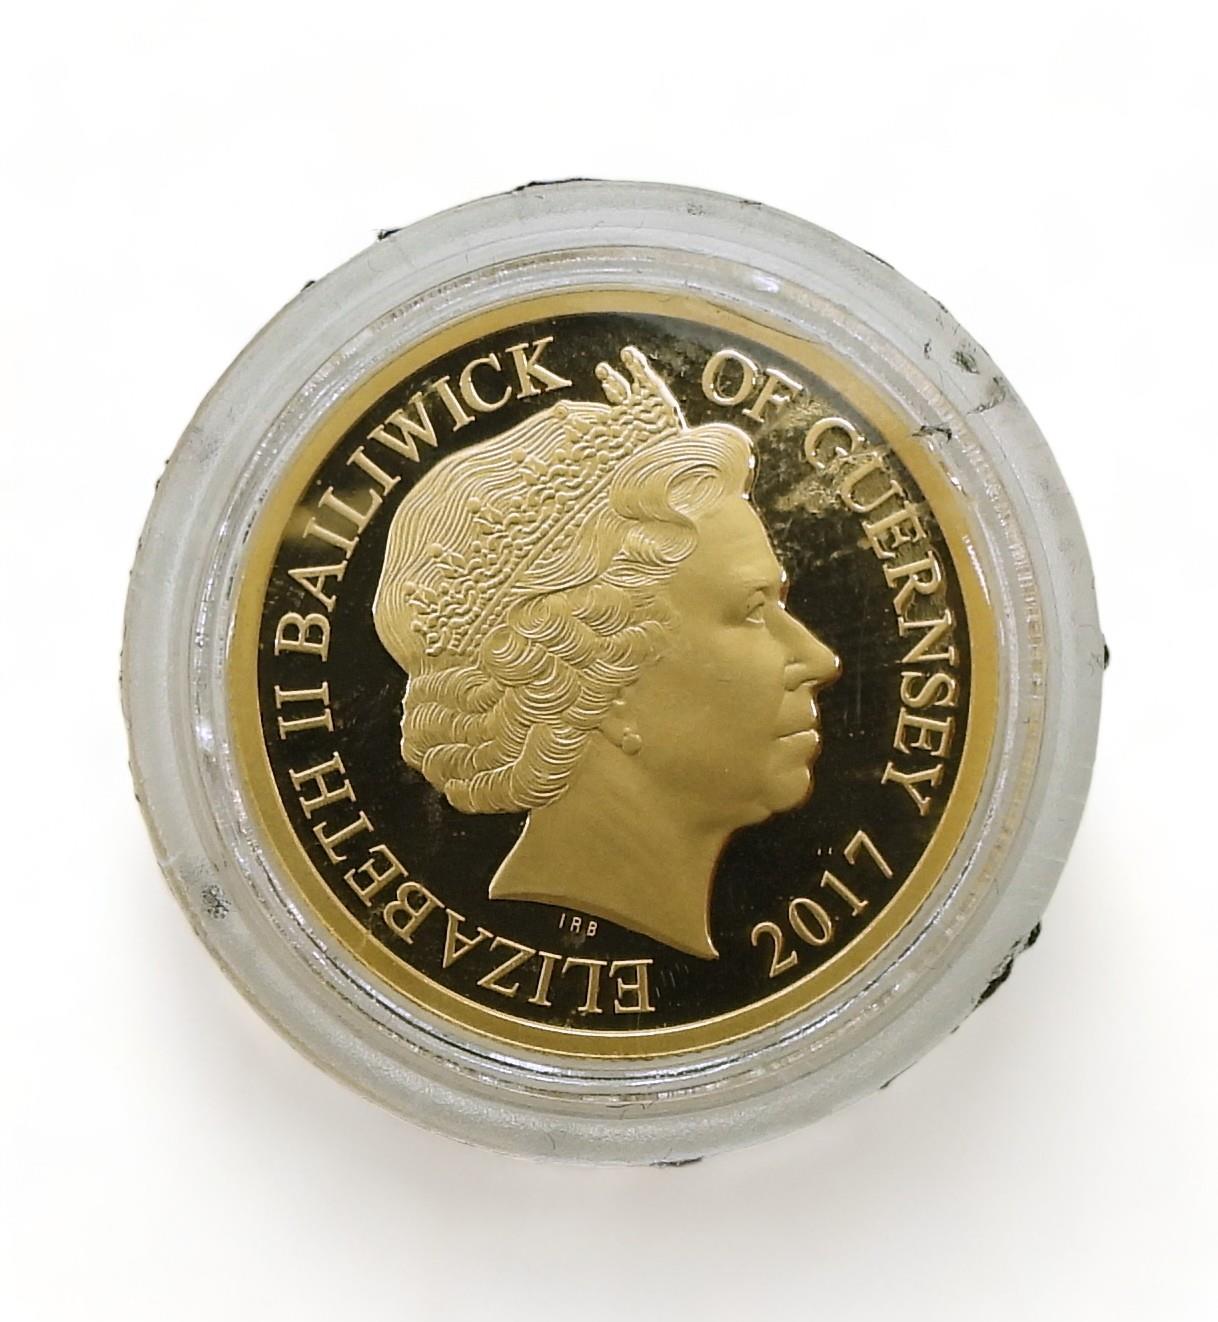 ELIZABETH II The Sapphire Jubilee 2017 One Pound Obverse Elizabeth II right, legend around